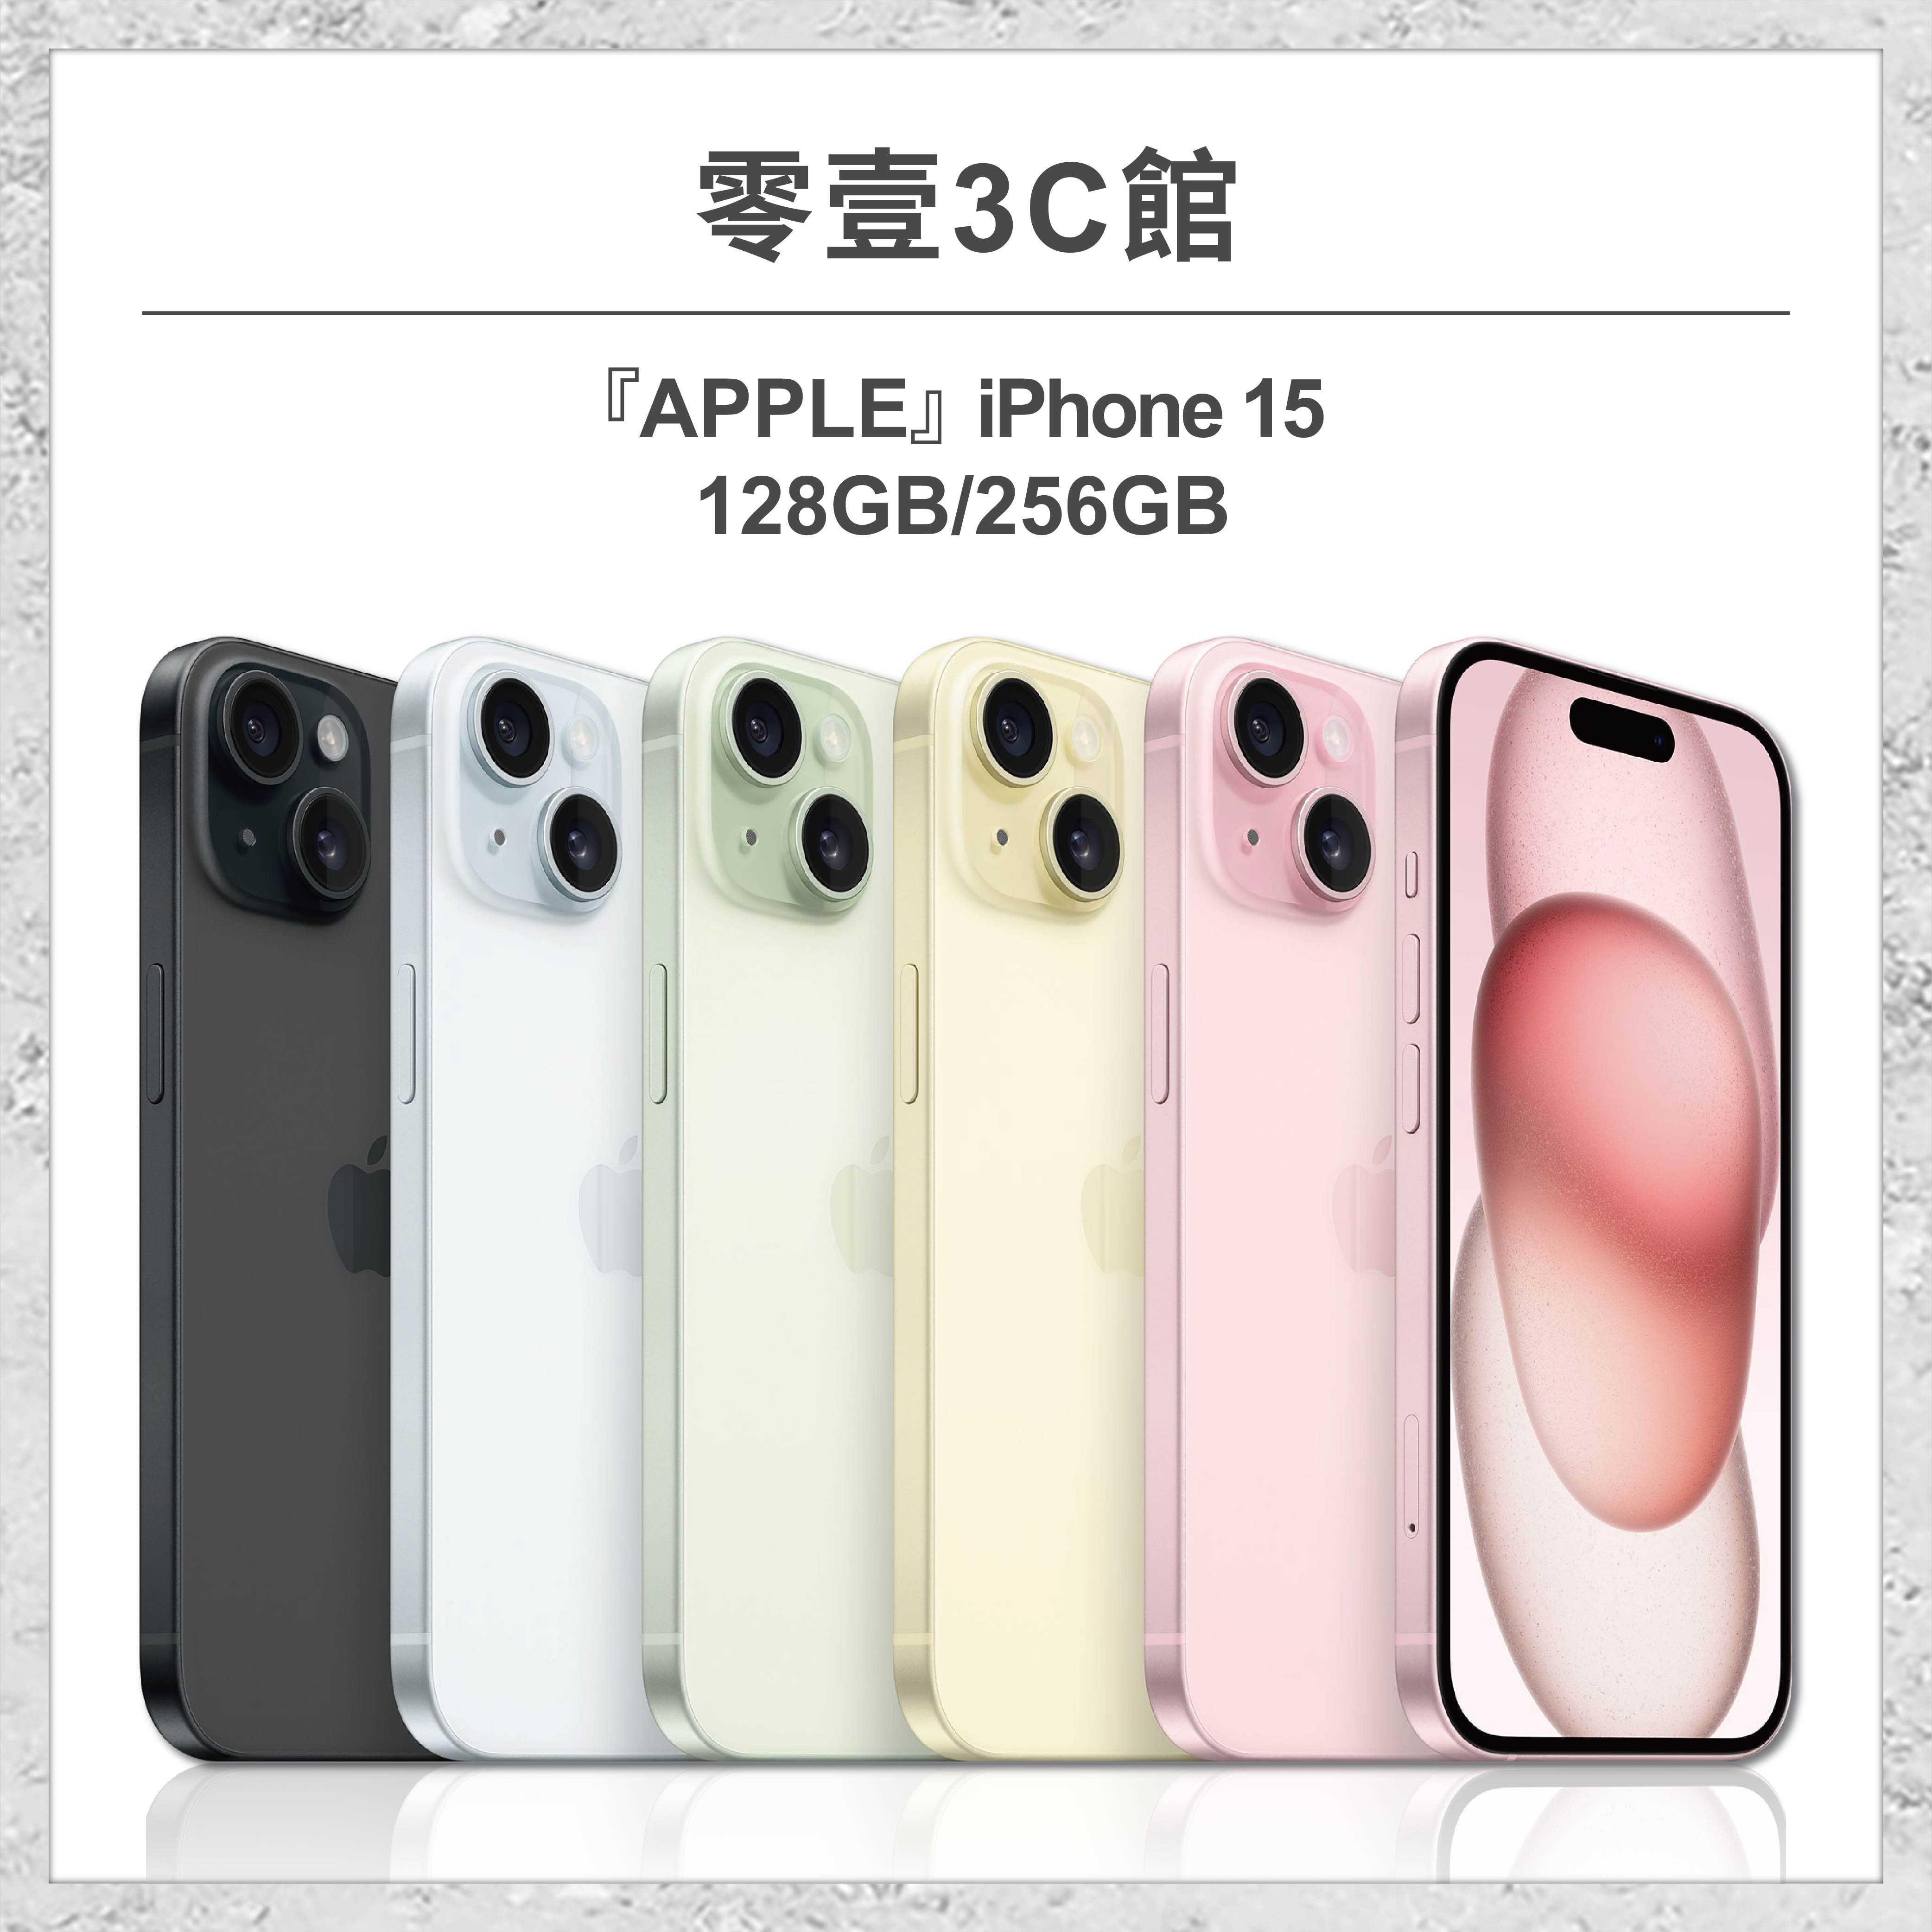 【Apple】iPhone 15 128GB/256GB 6.1吋 全新手機 智慧型手機 原廠保固1年